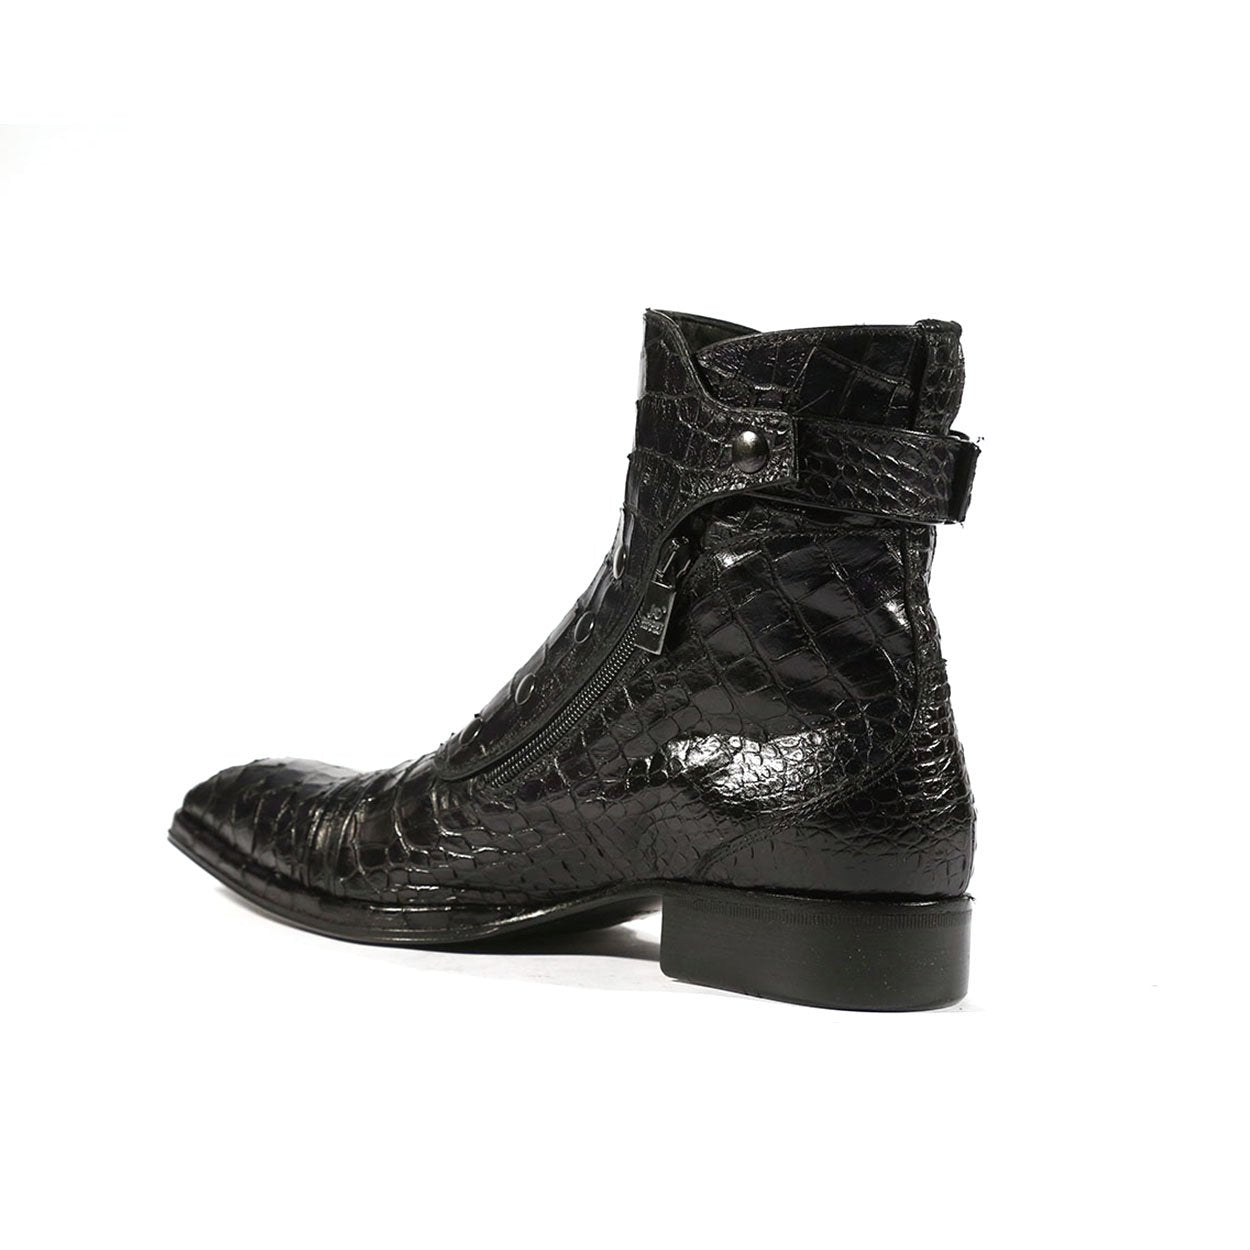 Jo Ghost 3206 Men's Shoes Black Crocodile Print / Calf-Skin Leather Bo ...